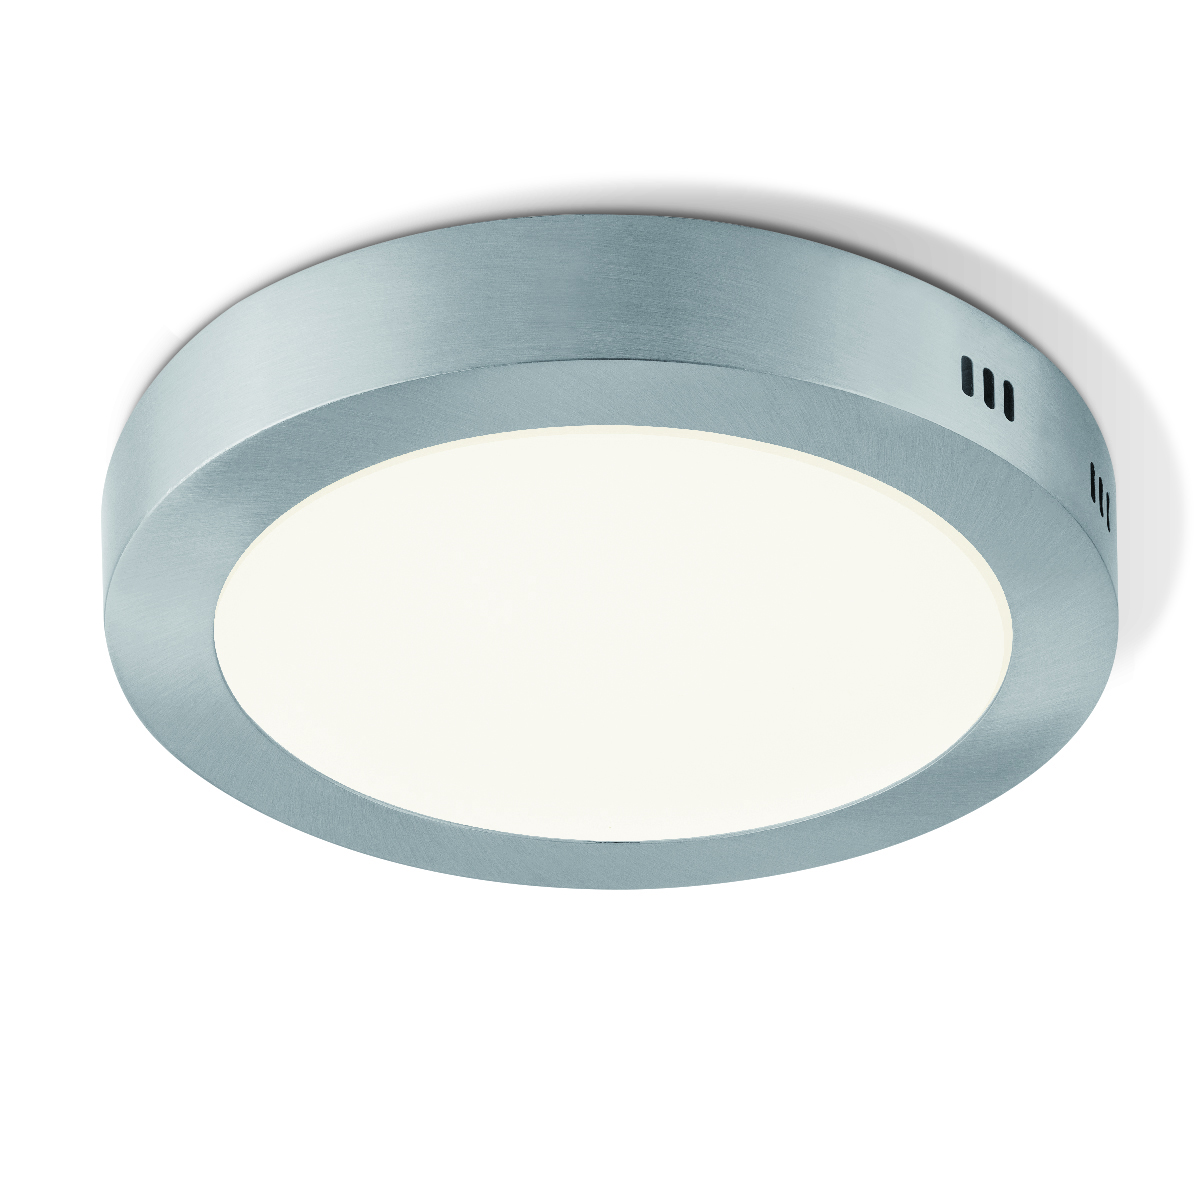 Tangla lighting - TLC5014-15MS - LED Ceiling lamp - metal - mat satin - large - round - pie